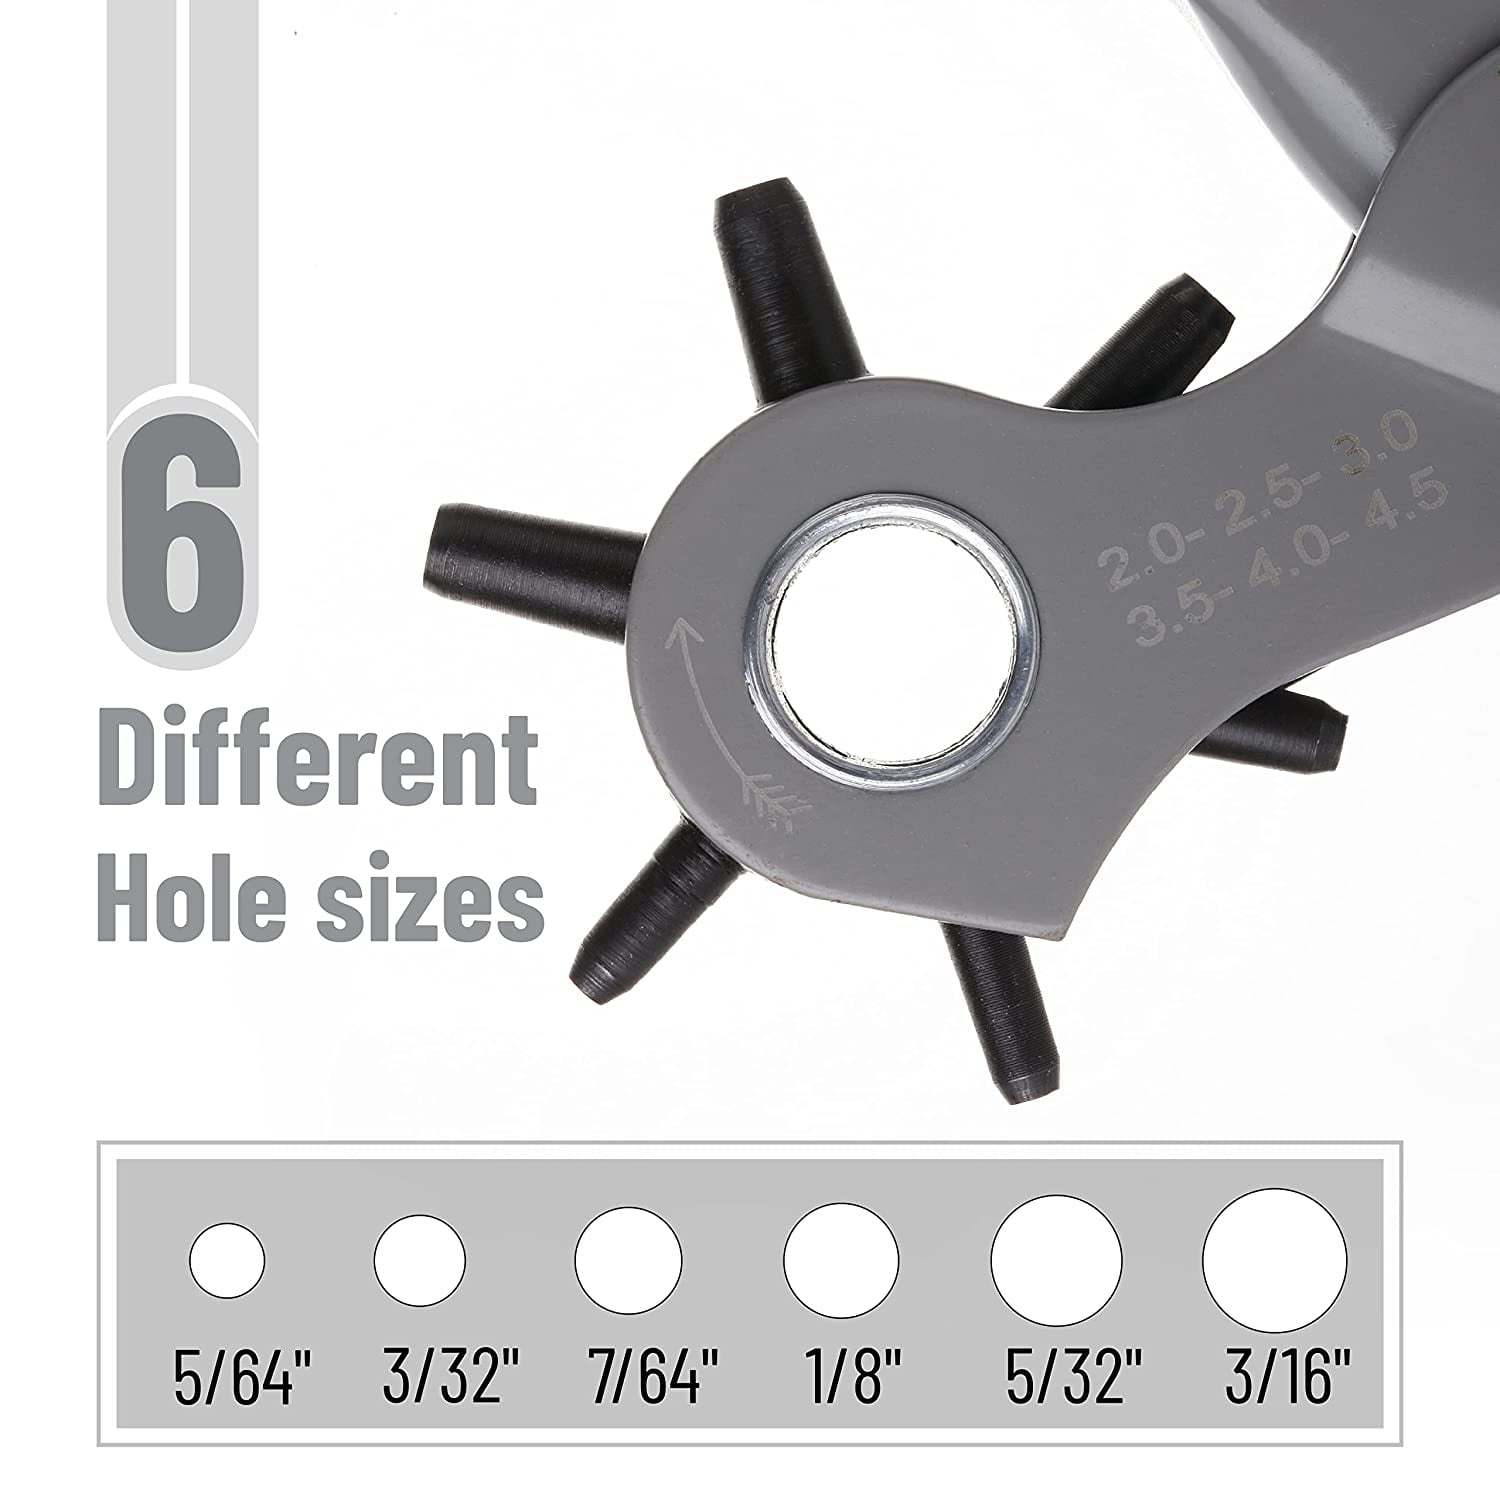 UNCO- Leather Hole Punch Tool, Multi Hole Sizes, Belt Hole Puncher, Leather Punch Tool, Leather Hole Punch for Belts, Leather Hole Puncher, Belt